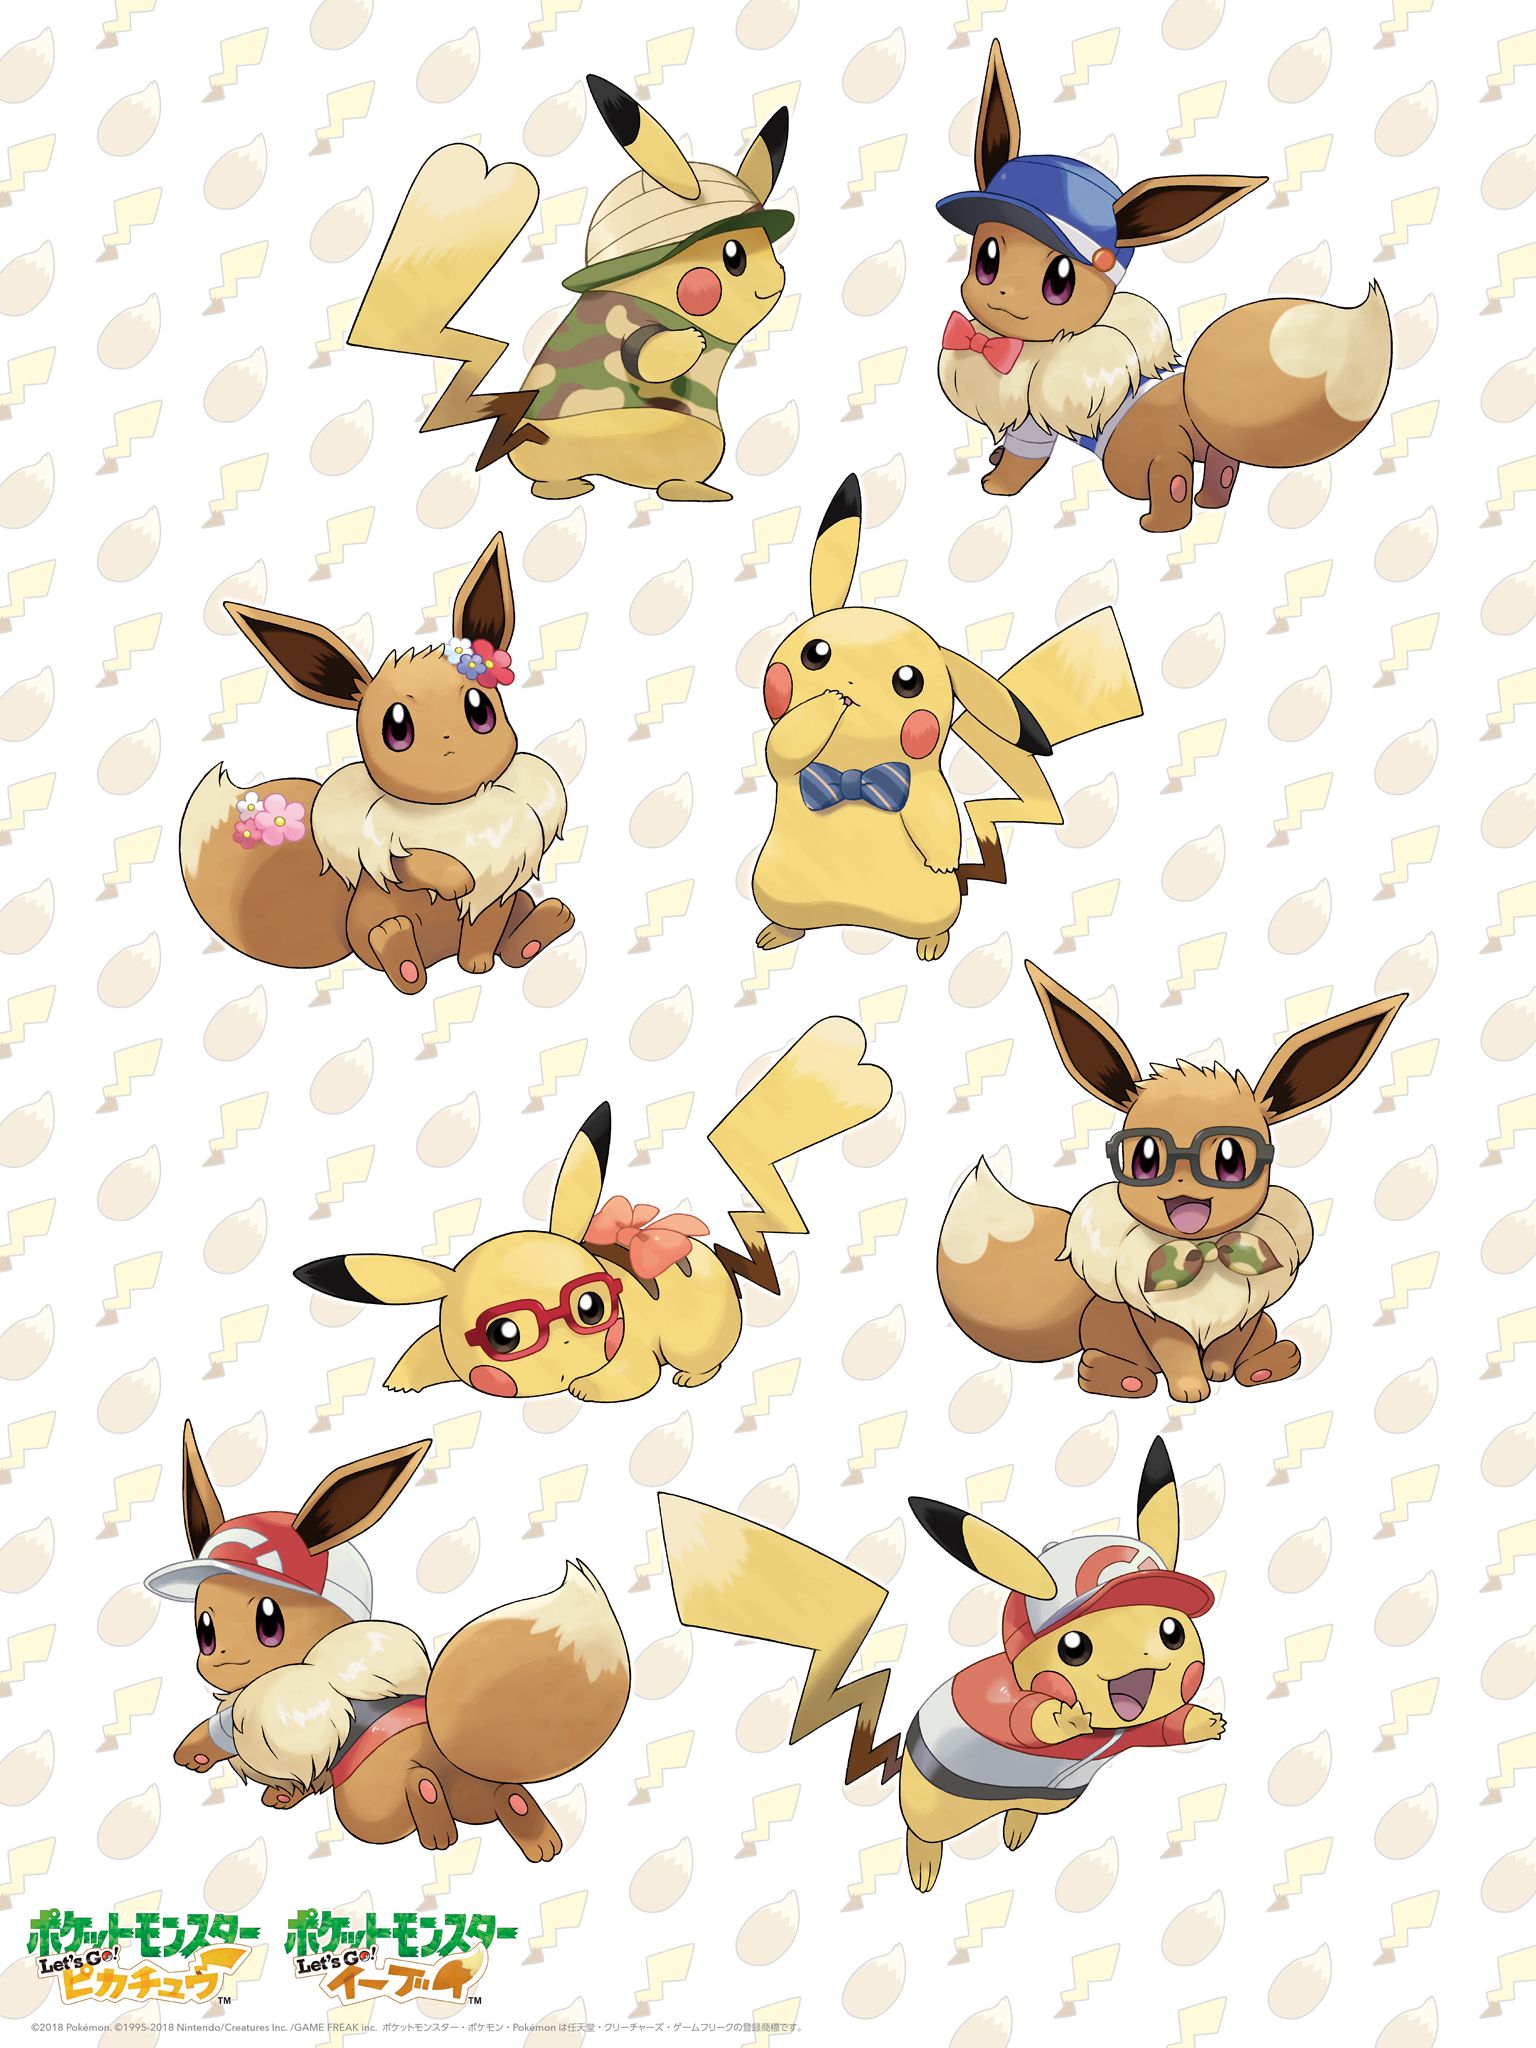 Cute Pikachu And Eevee Wallpapers Wallpapers